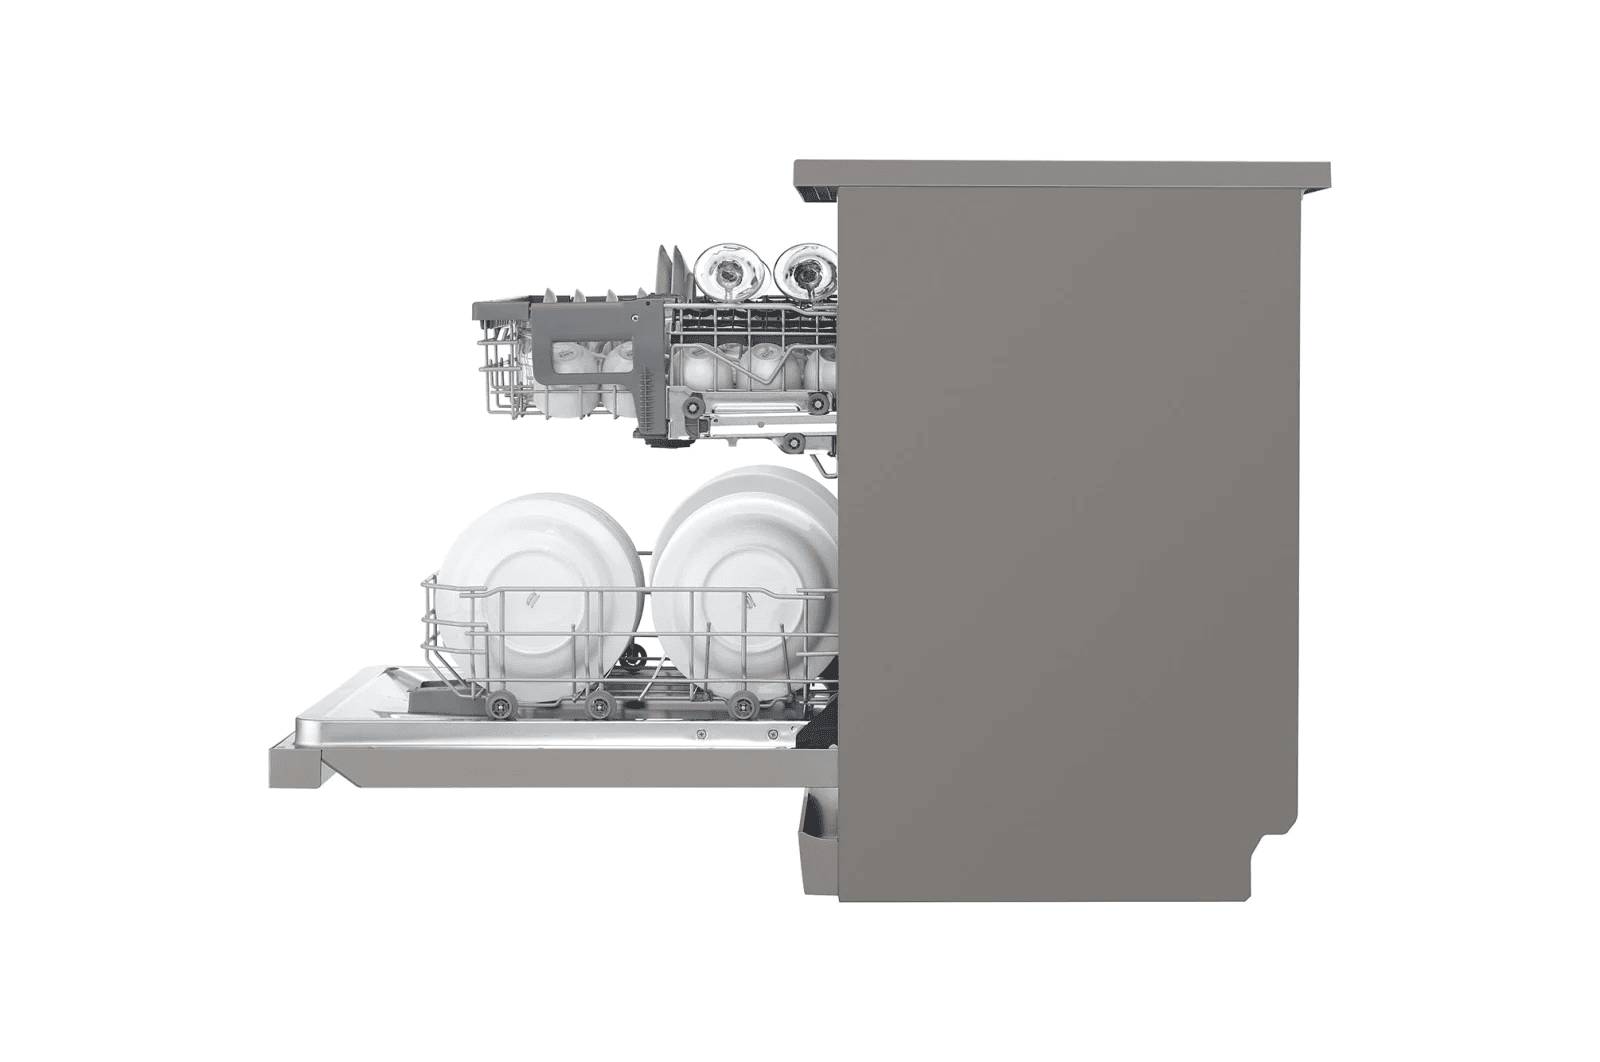 ماشین ظرفشویی ال جی مدل ۵۱۲ - 14نفره | مشخصات+ قیمت و خرید